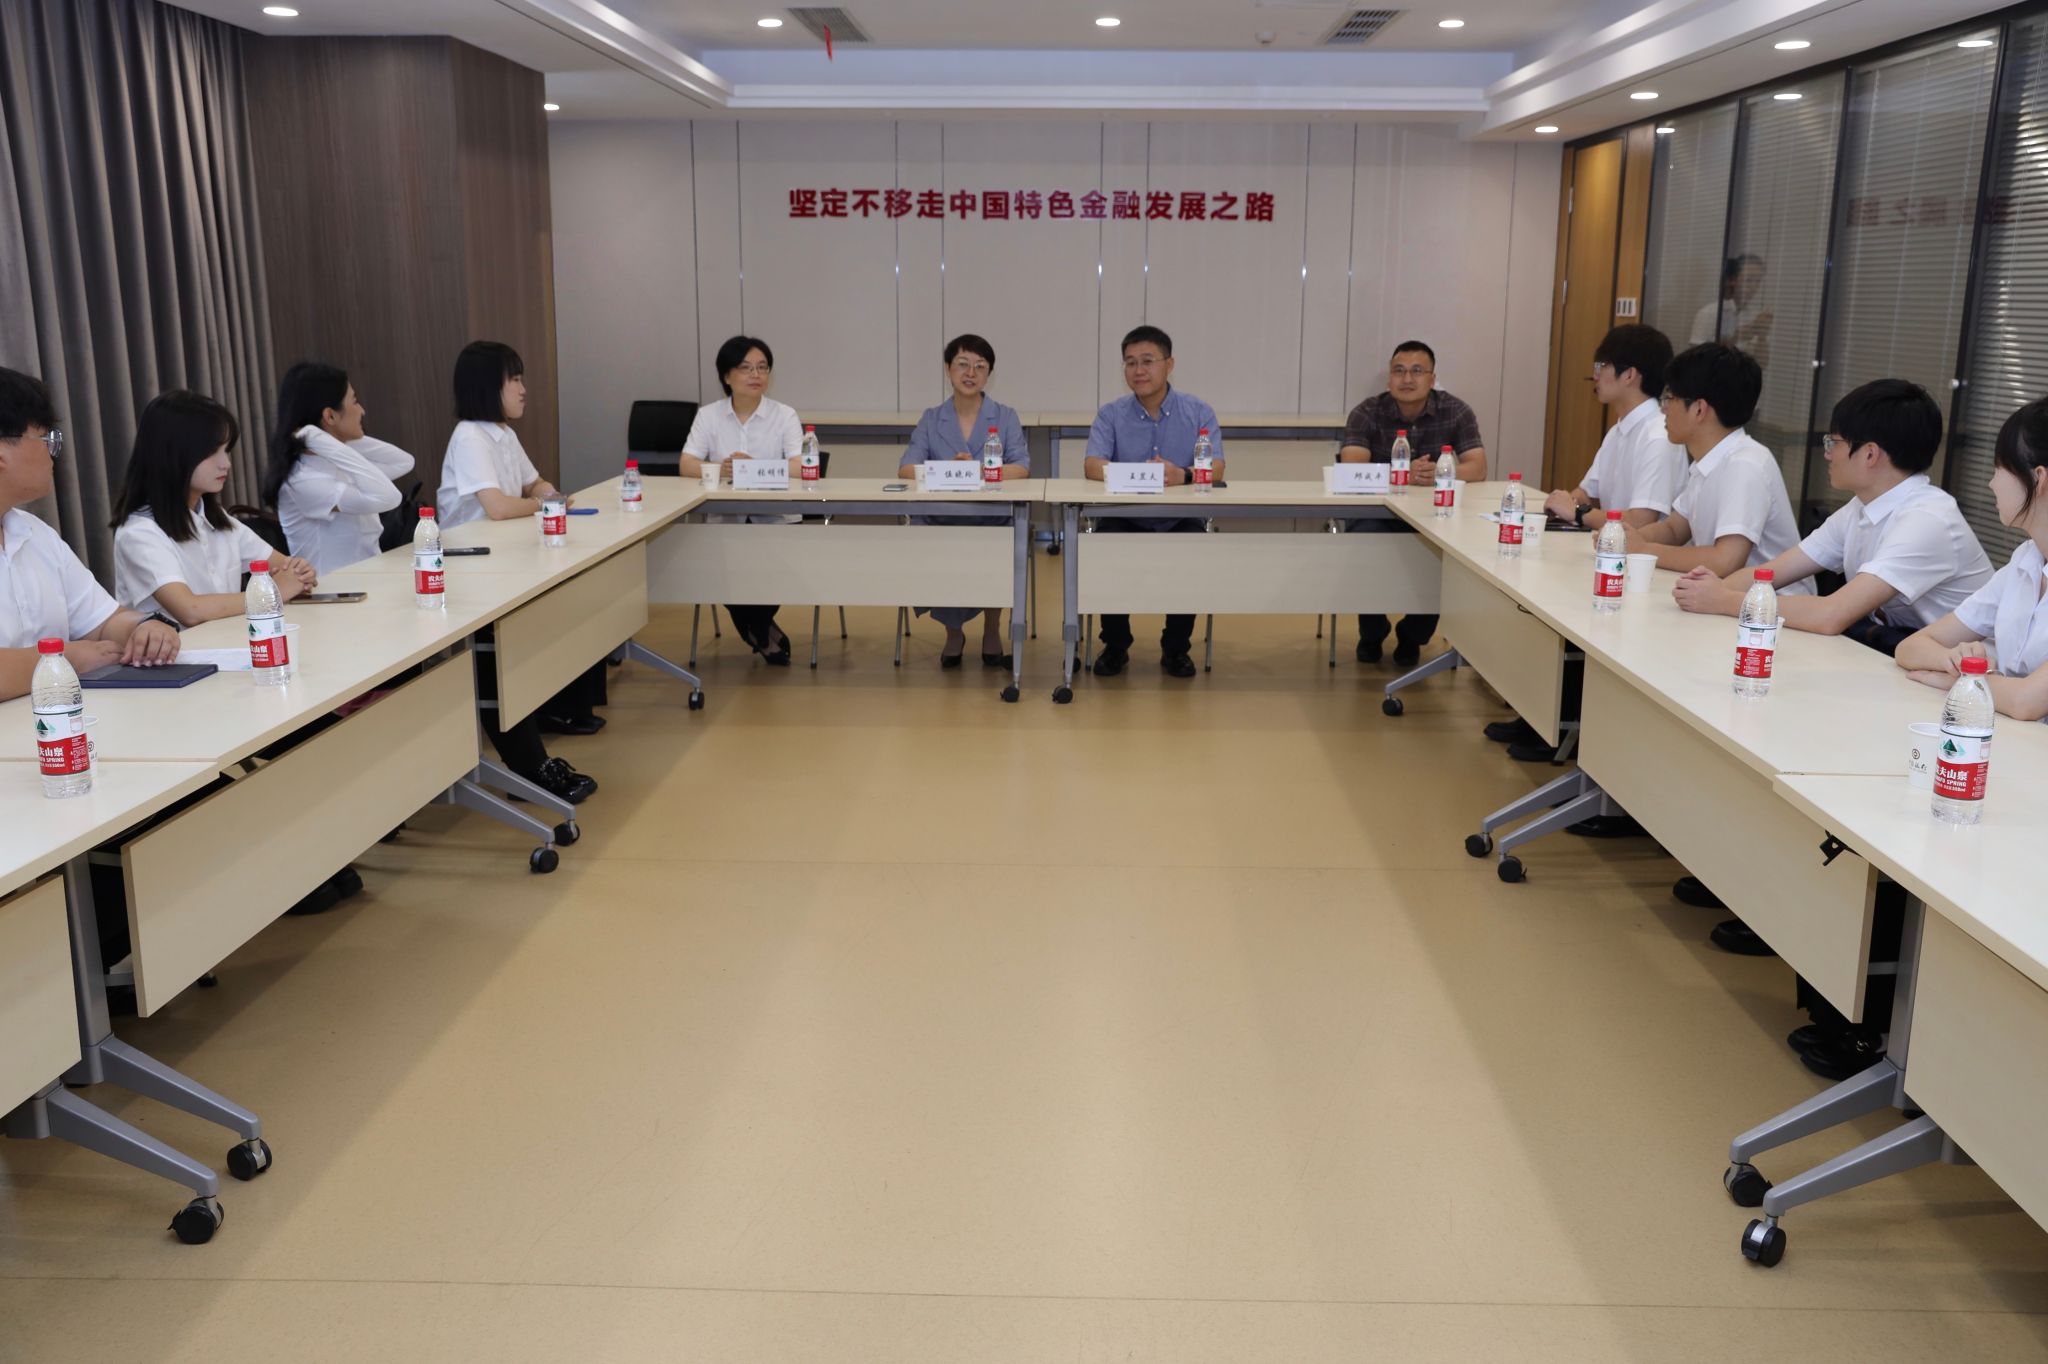 中国银行无锡分行——工商管理学院学生实习项目正式启动